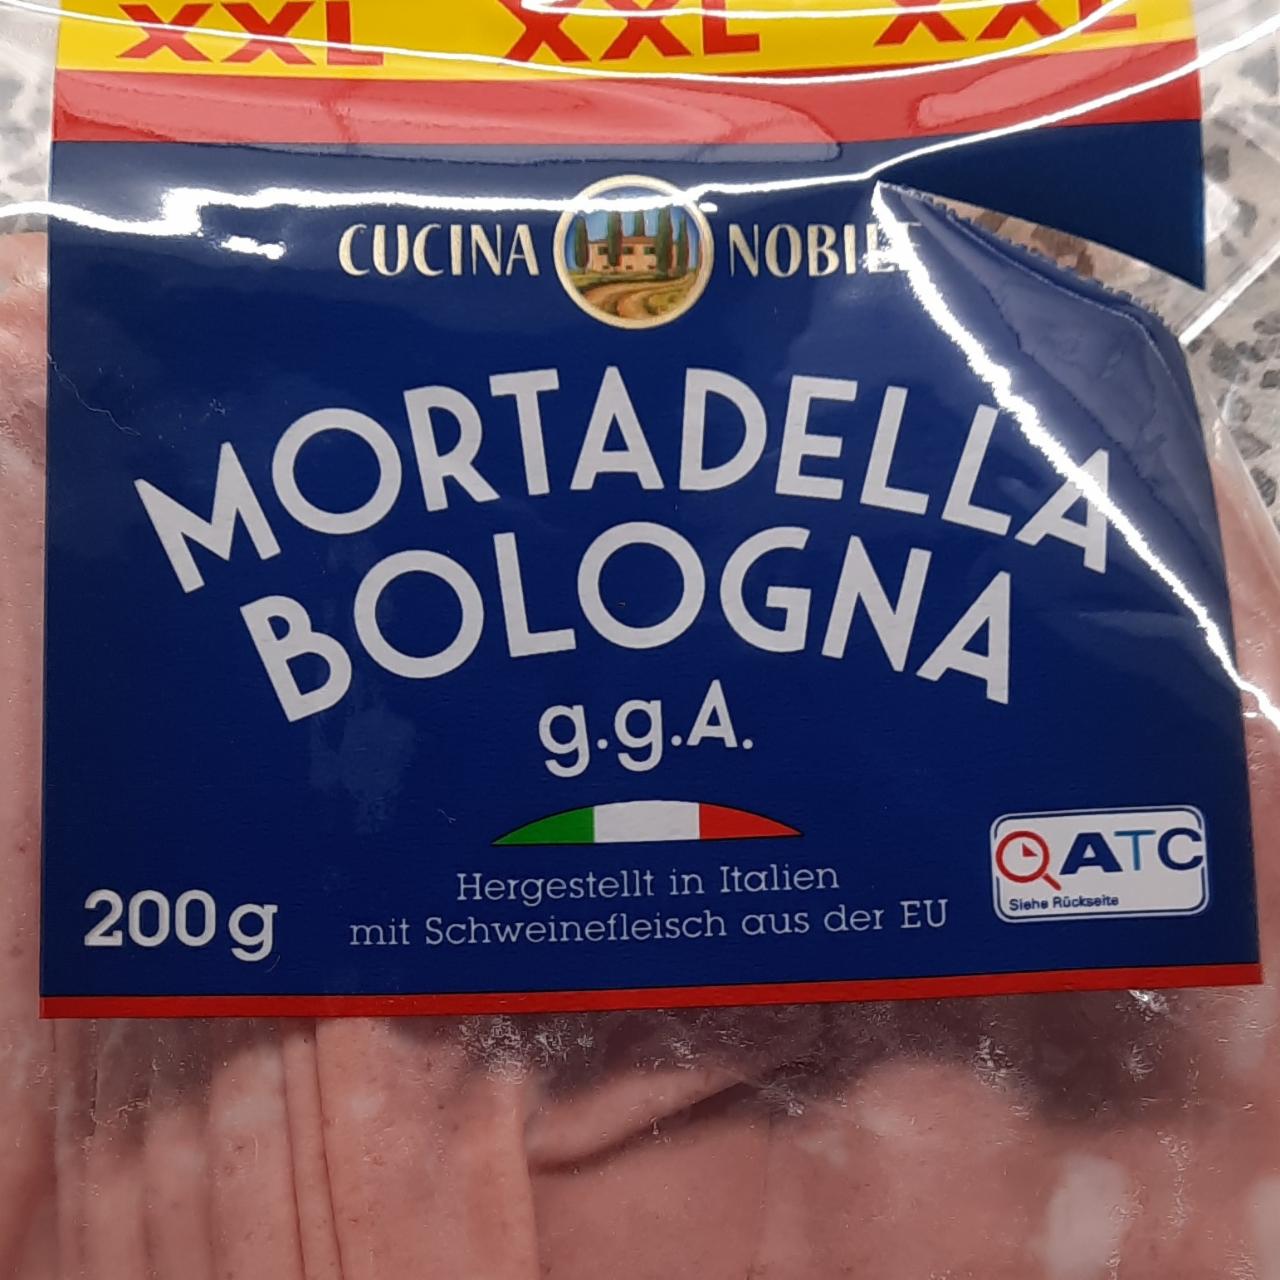 Fotografie - Mortadella Bologna g.g.A. Cucina Nobile